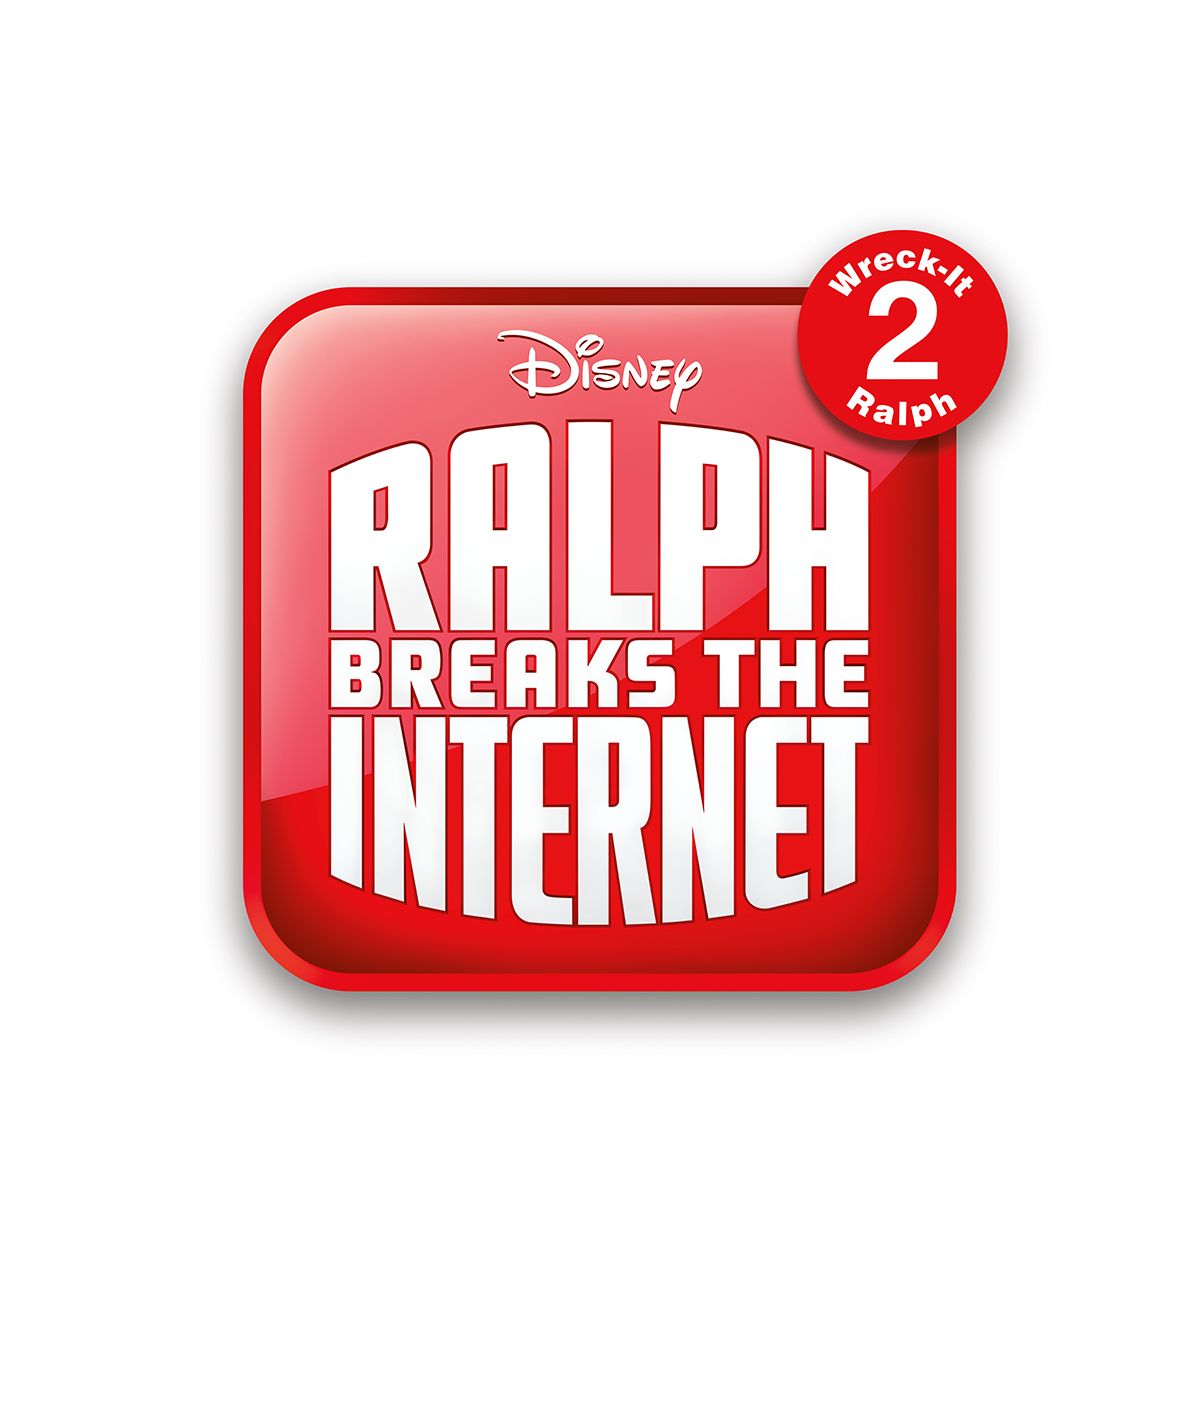 Wreck It Ralph 2 New logo